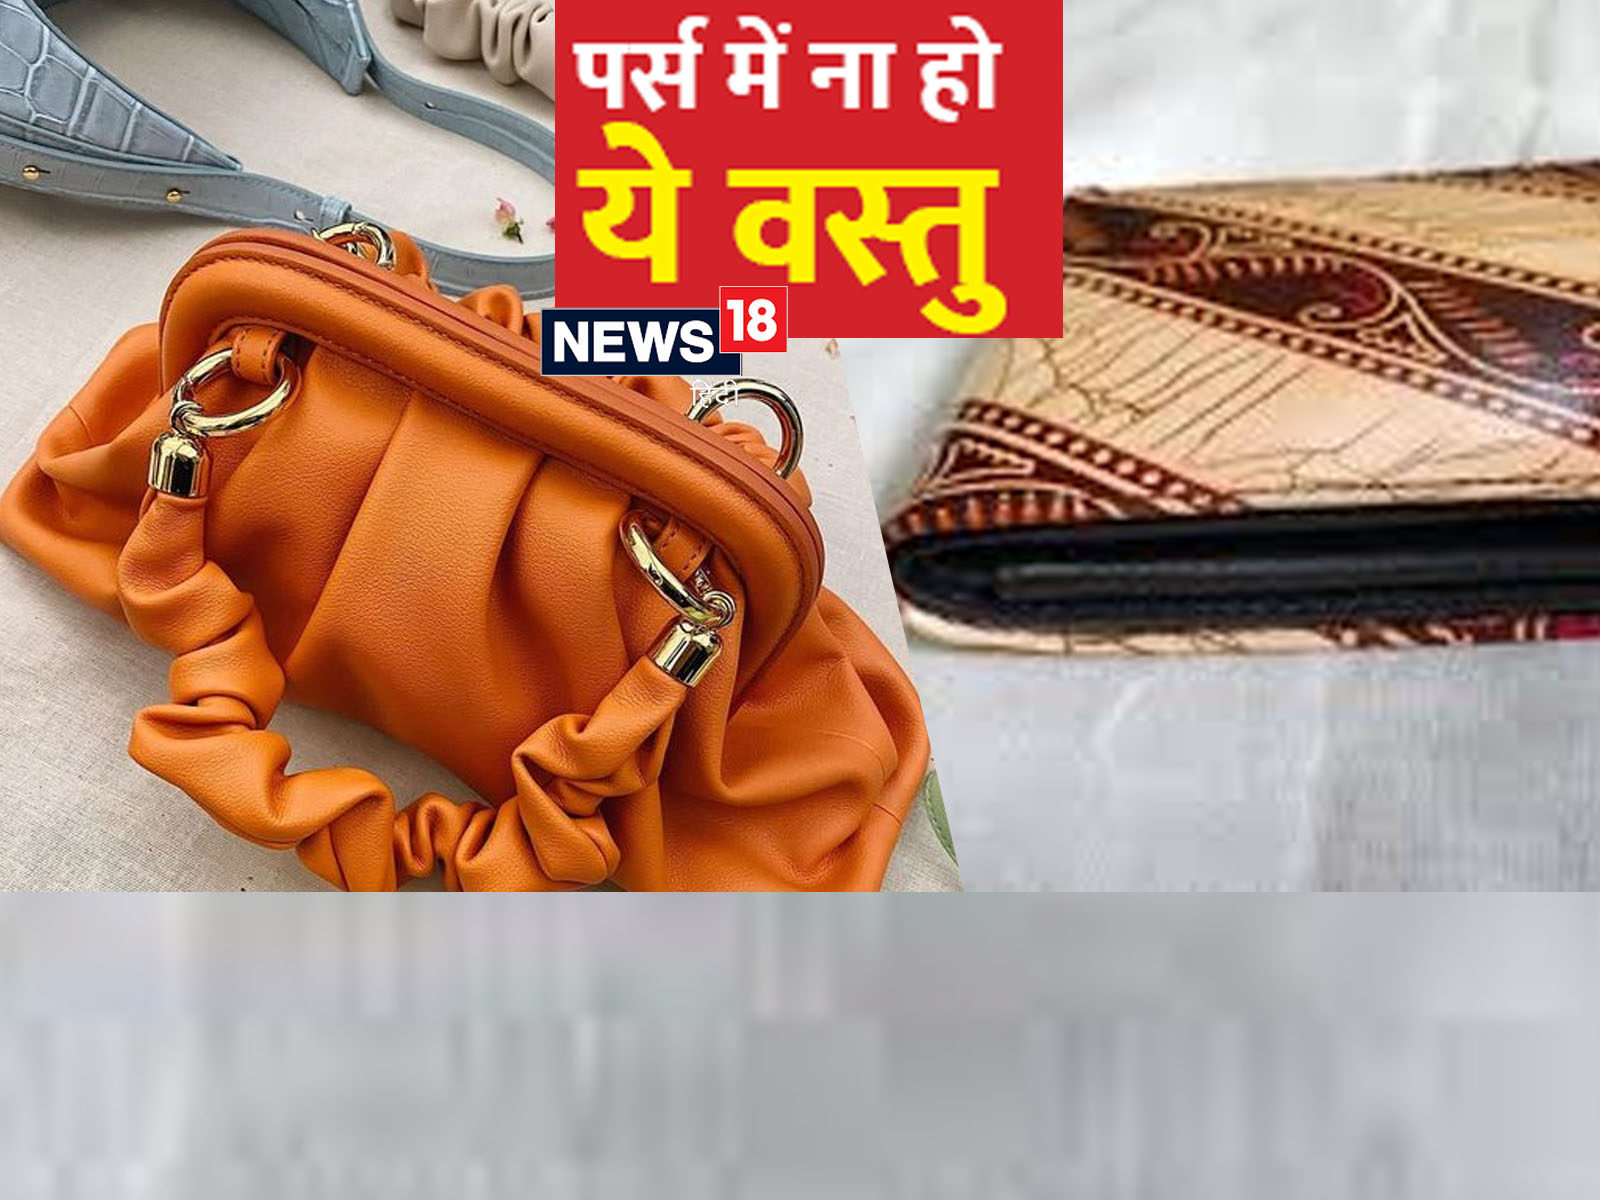 Hand Purse For Women: कैश और कार्ड कैरी करने के लिए इन पर्स को करें  इस्तेमाल, फैशन स्टाइल भी होगा इंप्रूव - hand purse for women to carry cash  and cards easily -